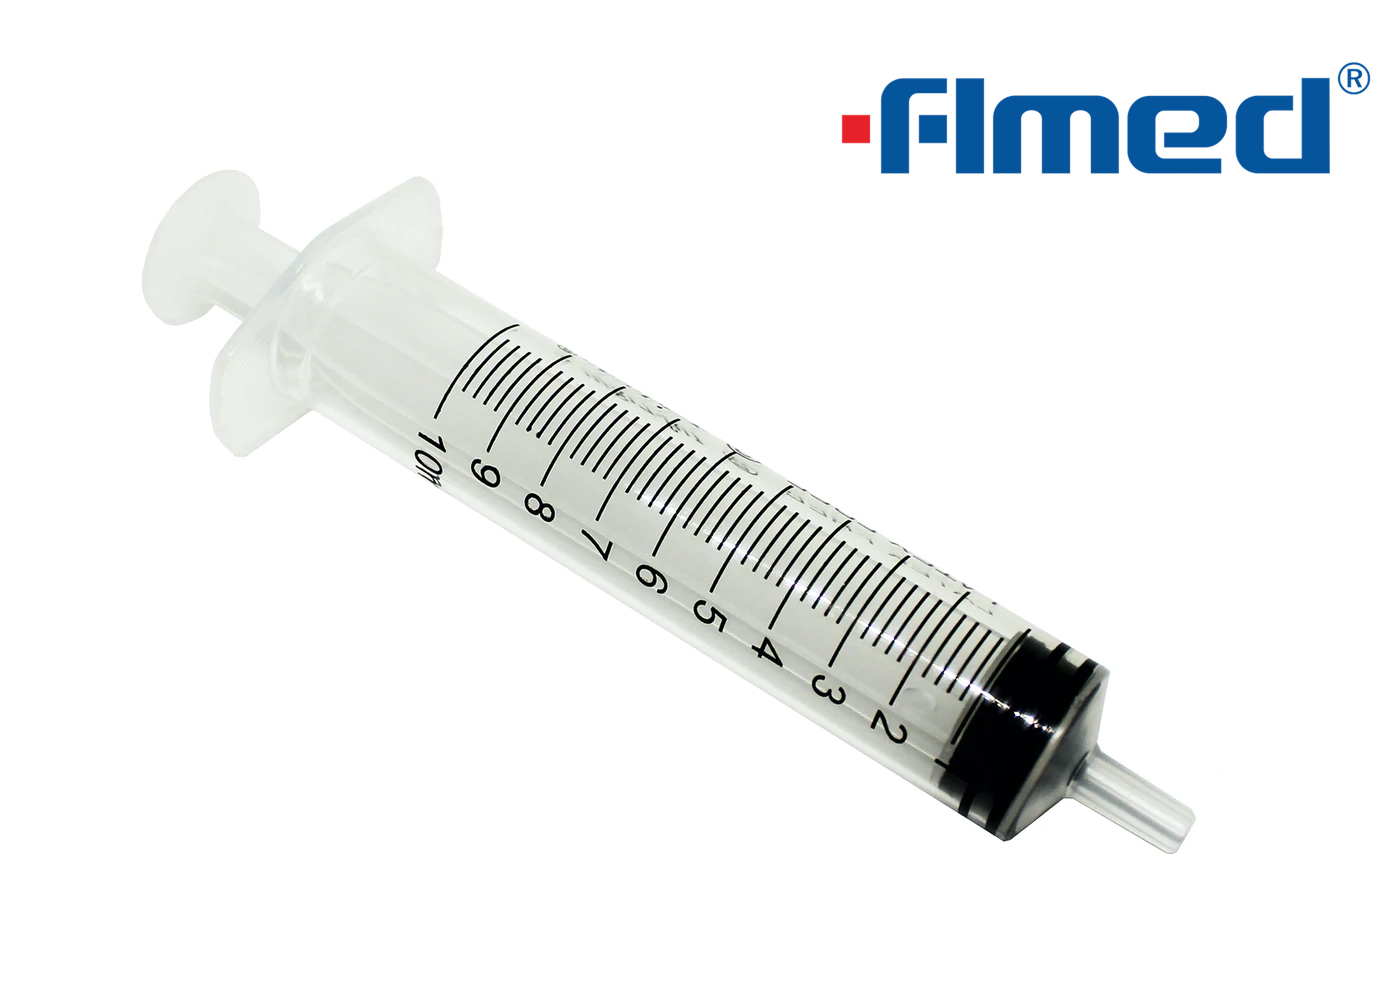 Syringe de 10 ml avec une aiguille hypodermique 21G excentrique